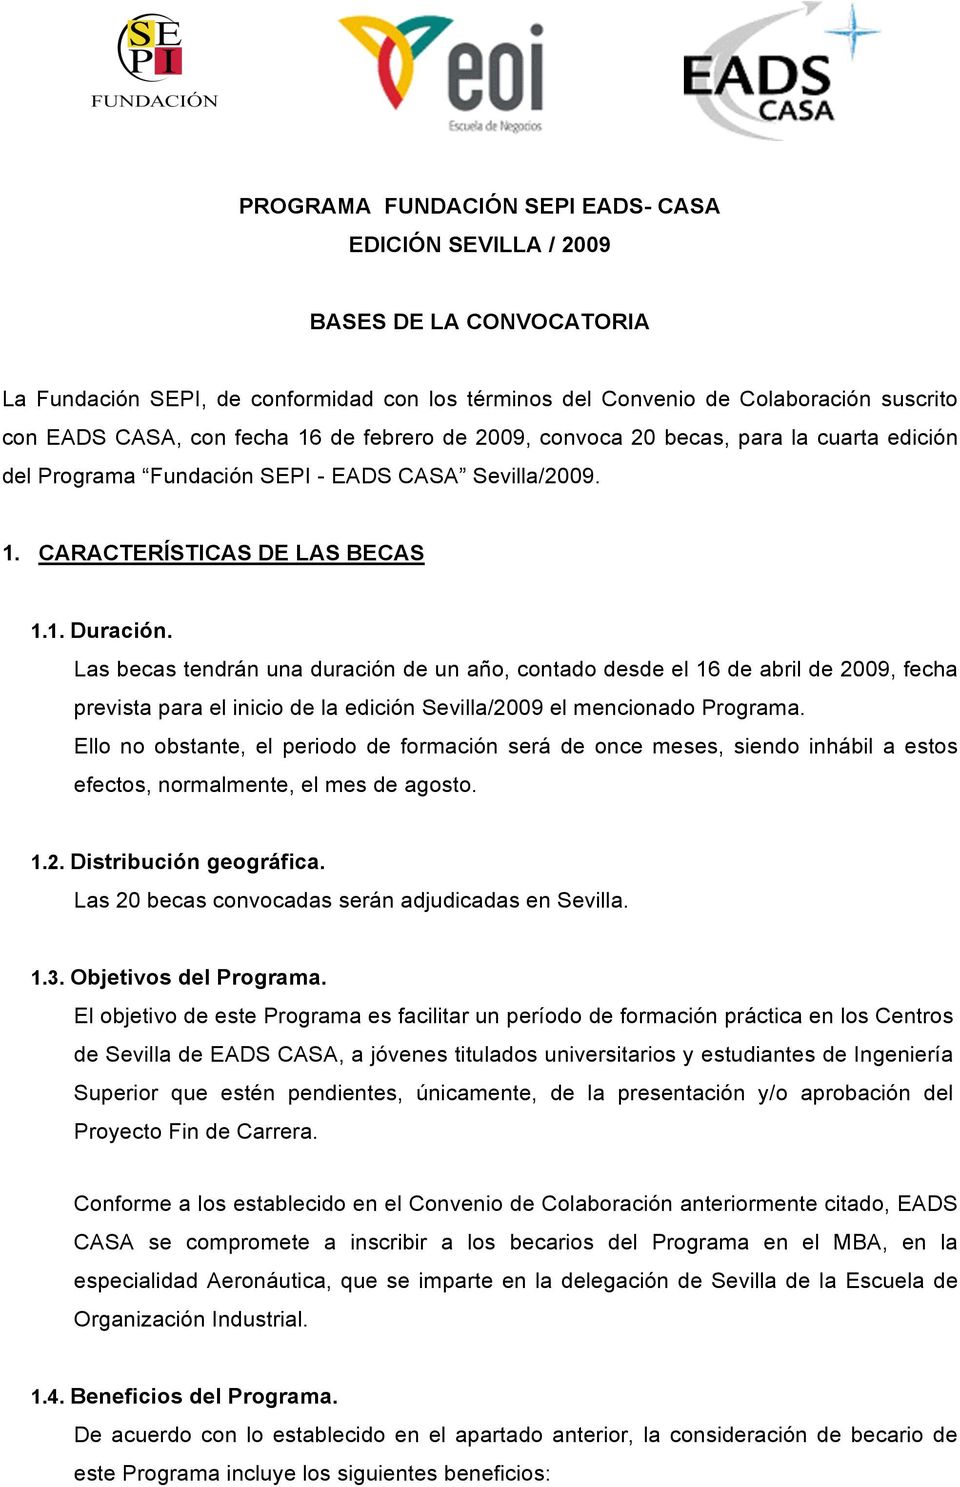 Las becas tendrán una duración de un año, contado desde el 16 de abril de 2009, fecha prevista para el inicio de la edición Sevilla/2009 el mencionado Programa.